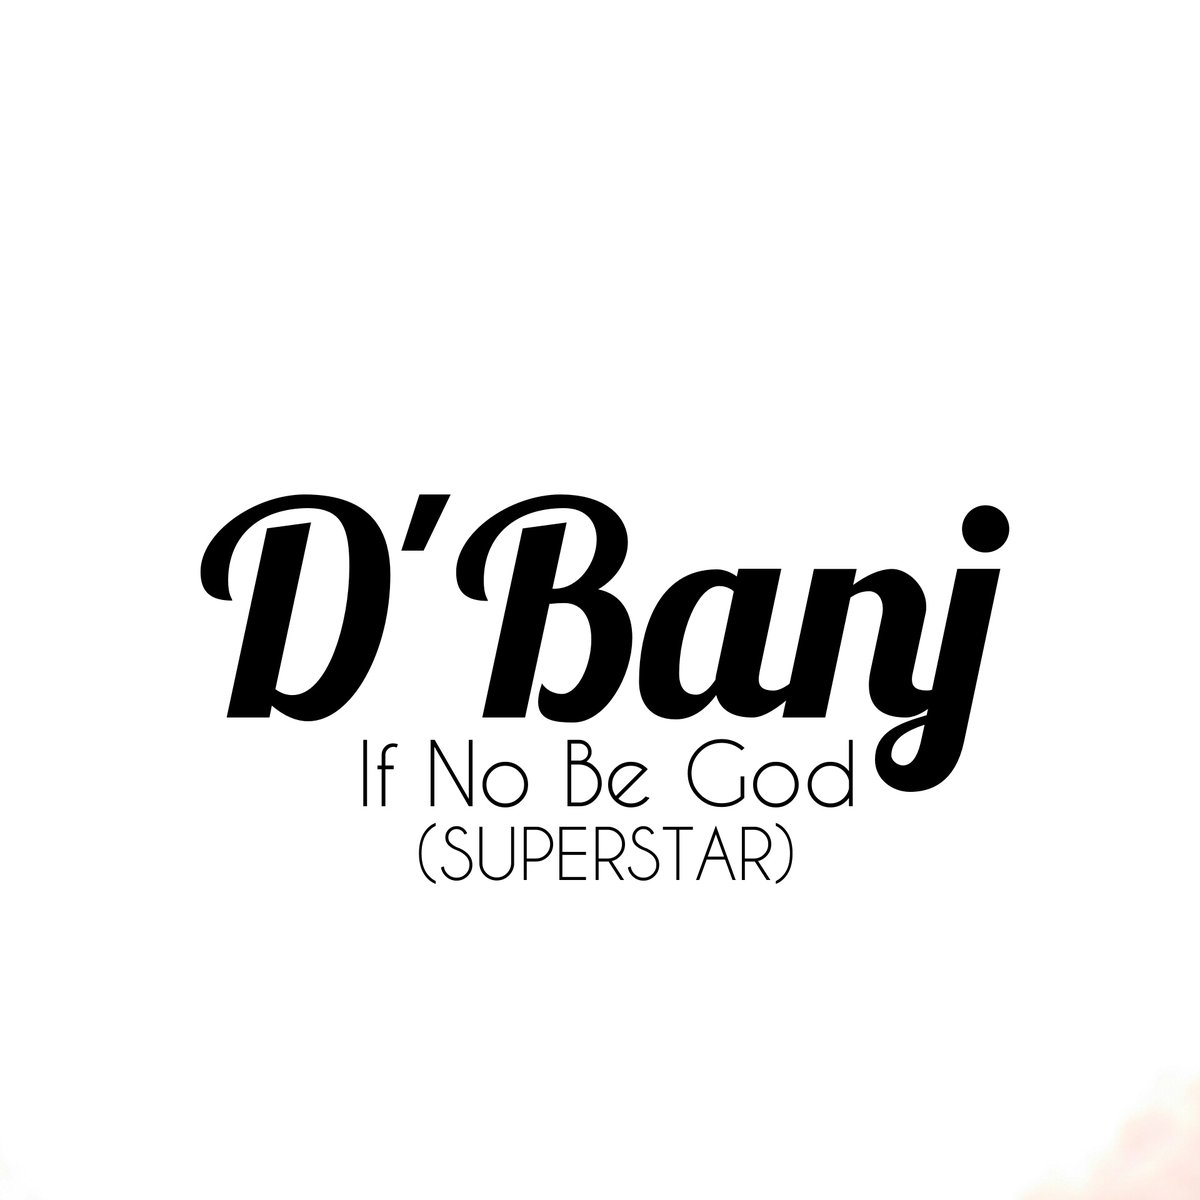 dbanj-no-god-superstar